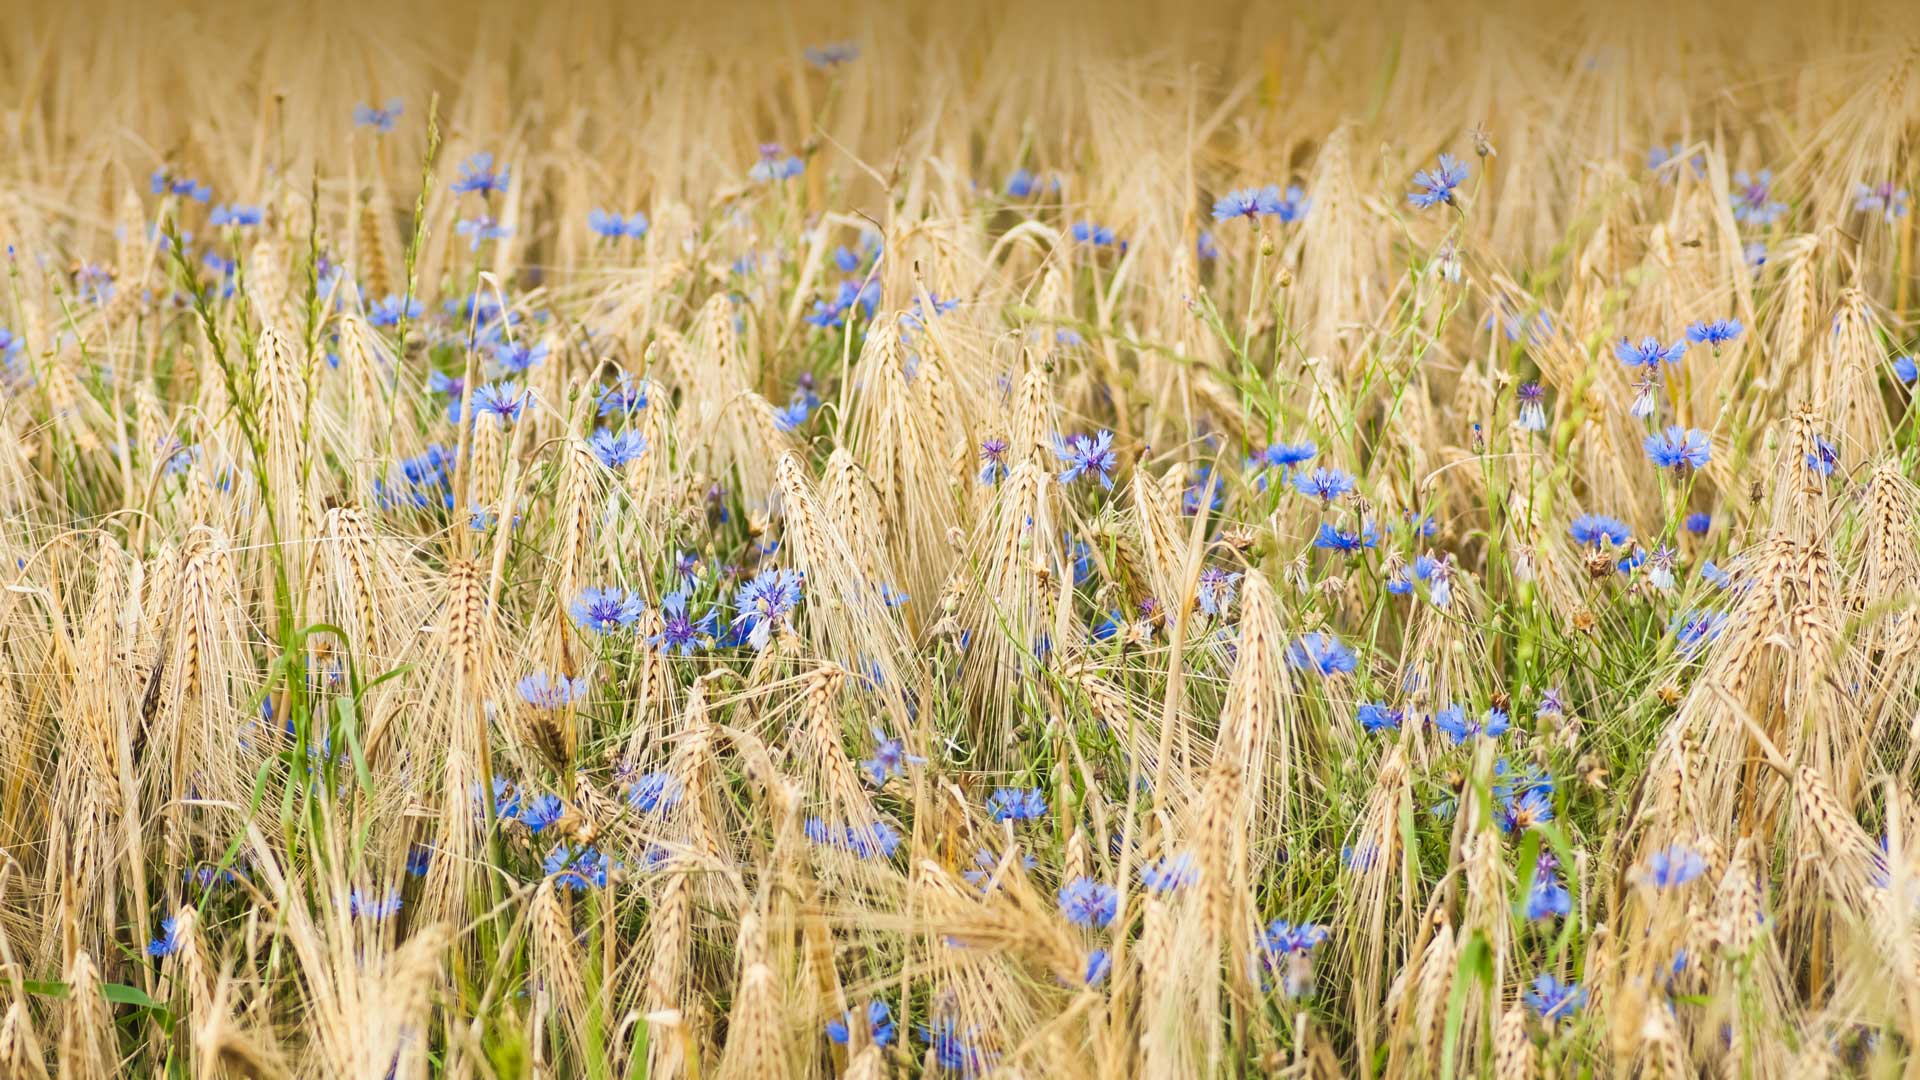 微软壁纸探索世界0506-大麦和矢车菊（Barley and Cornflower）